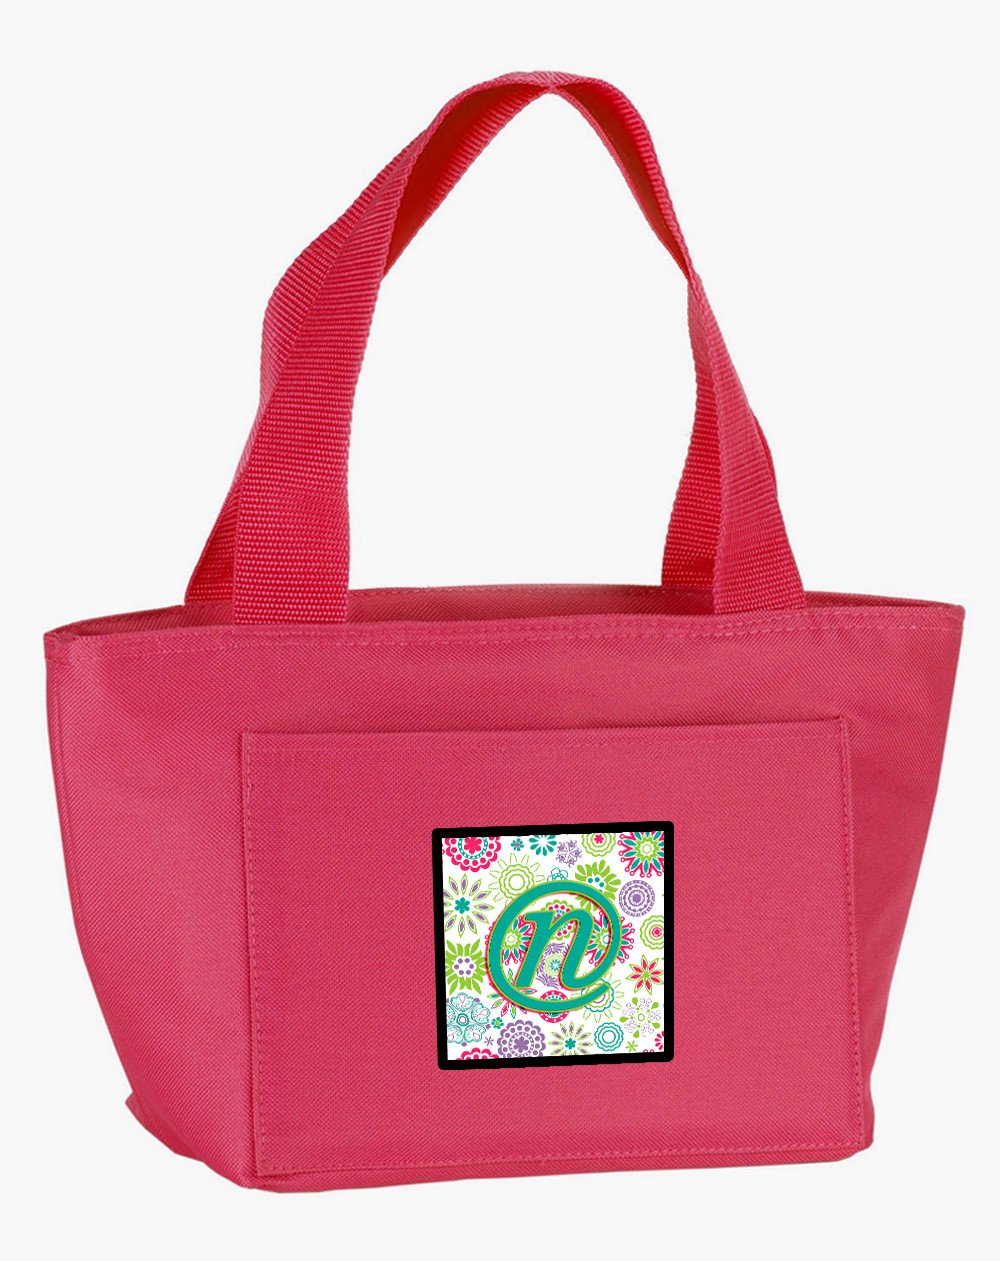 Letter N Flowers Pink Teal Green Initial Lunch Bag CJ2011-NPK-8808 by Caroline&#39;s Treasures